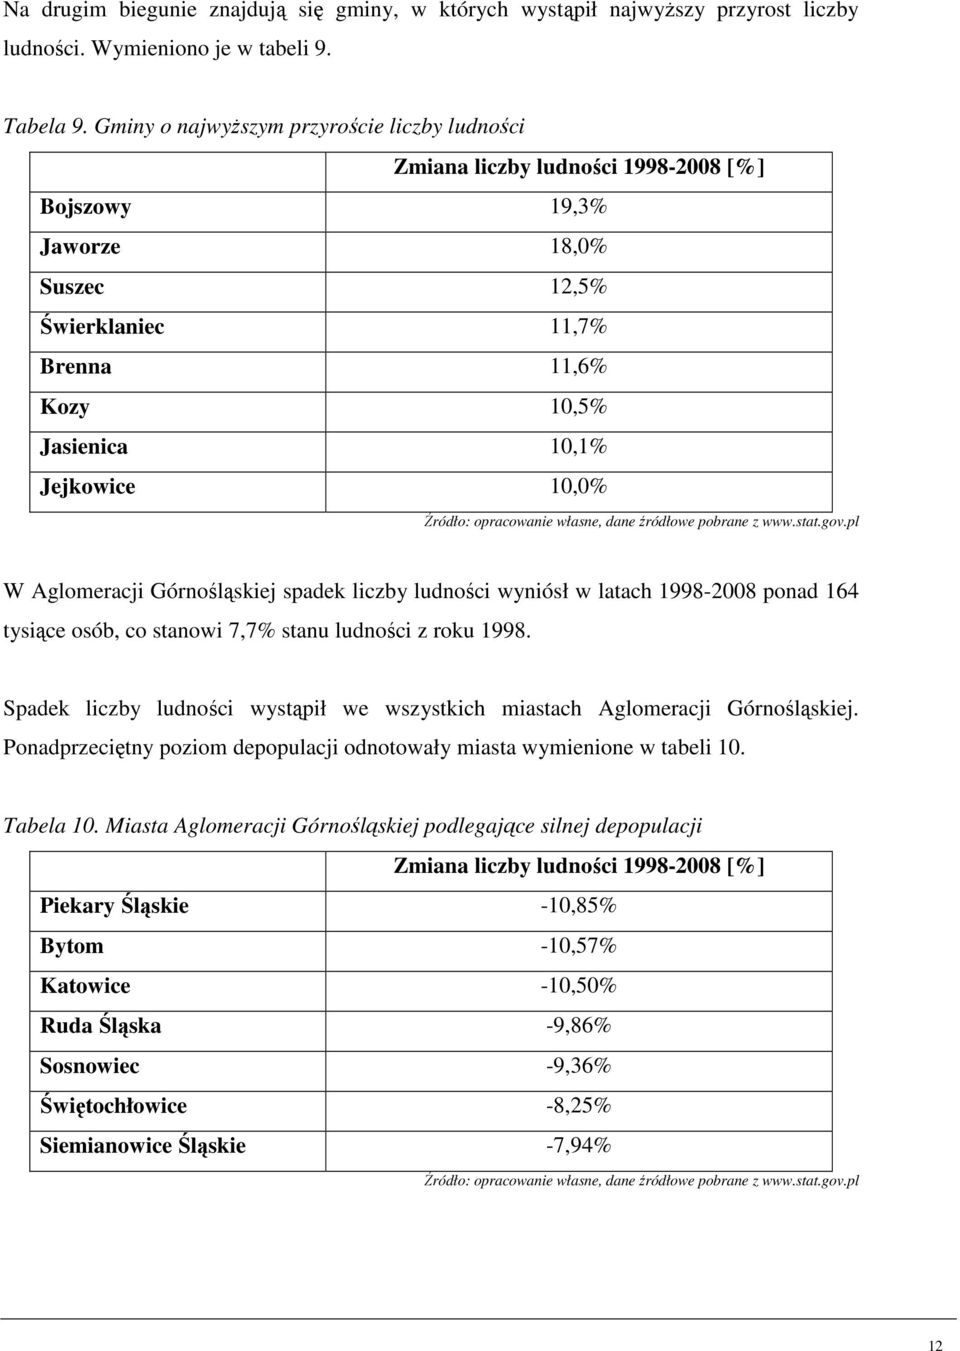 Aglomeracji Górnośląskiej spadek liczby ludności wyniósł w latach 1998-2008 ponad 164 tysiące osób, co stanowi 7,7% stanu ludności z roku 1998.